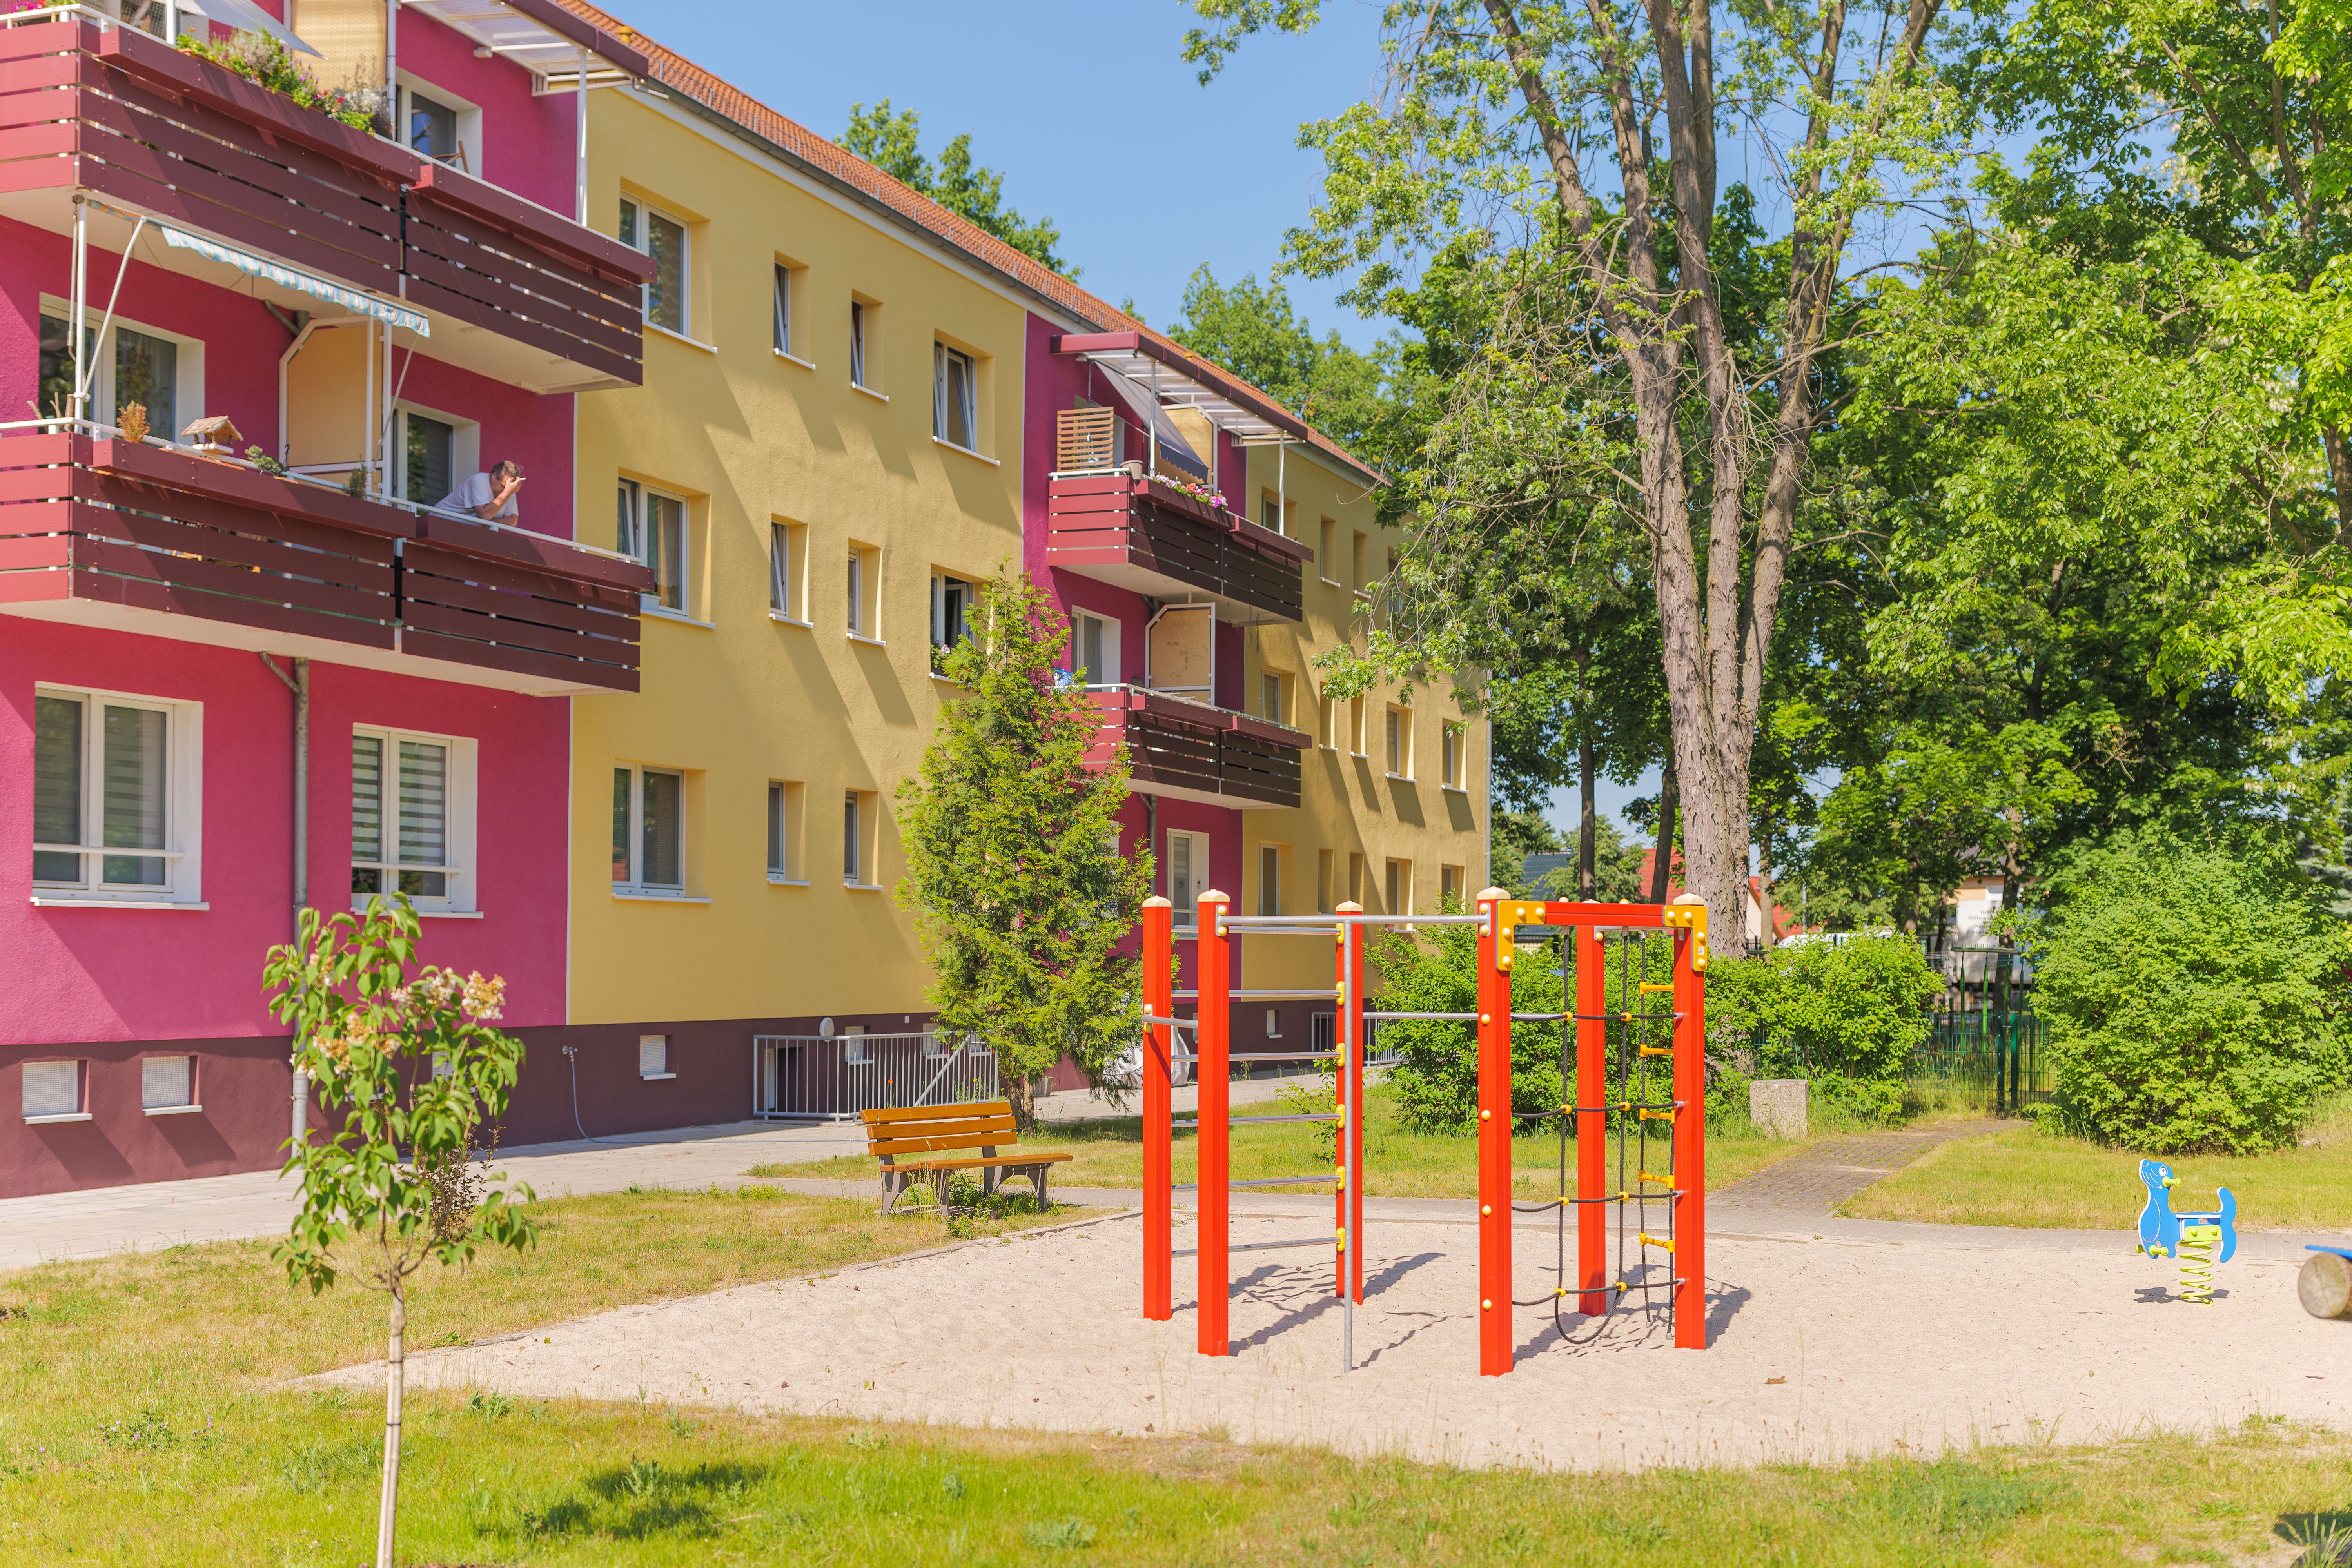 farbintensives Wohnhaus mit Spielplatz im grünen Hof